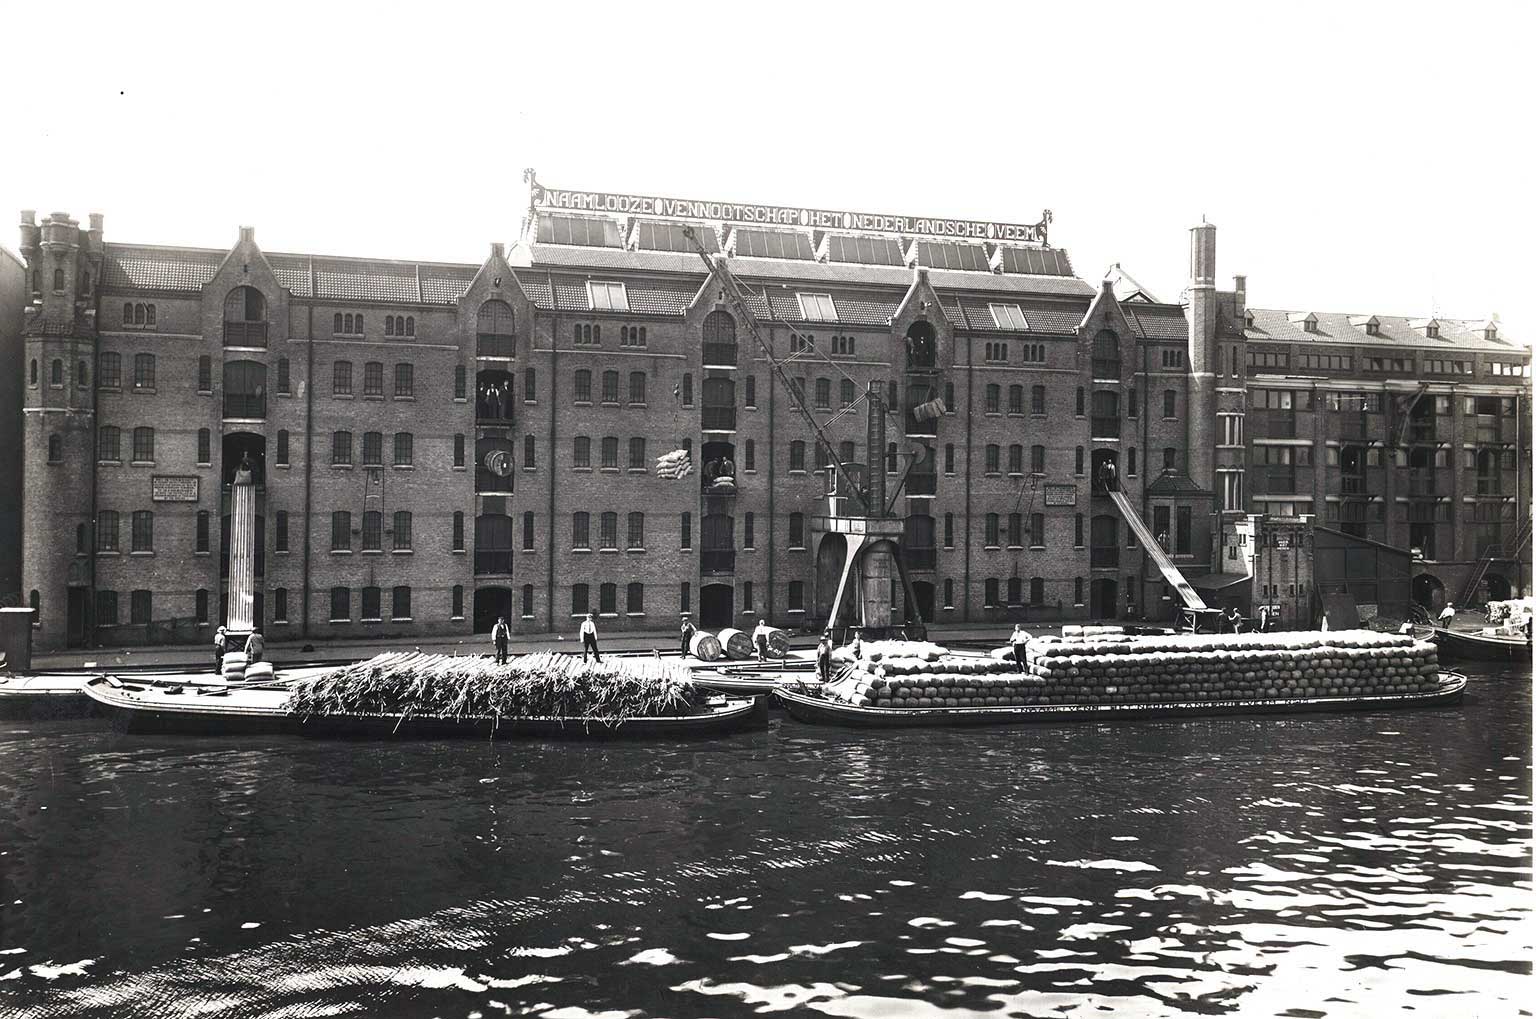 Back of the Nederlandsche Veem on Van Diemenkade, Amsterdam, in 1950